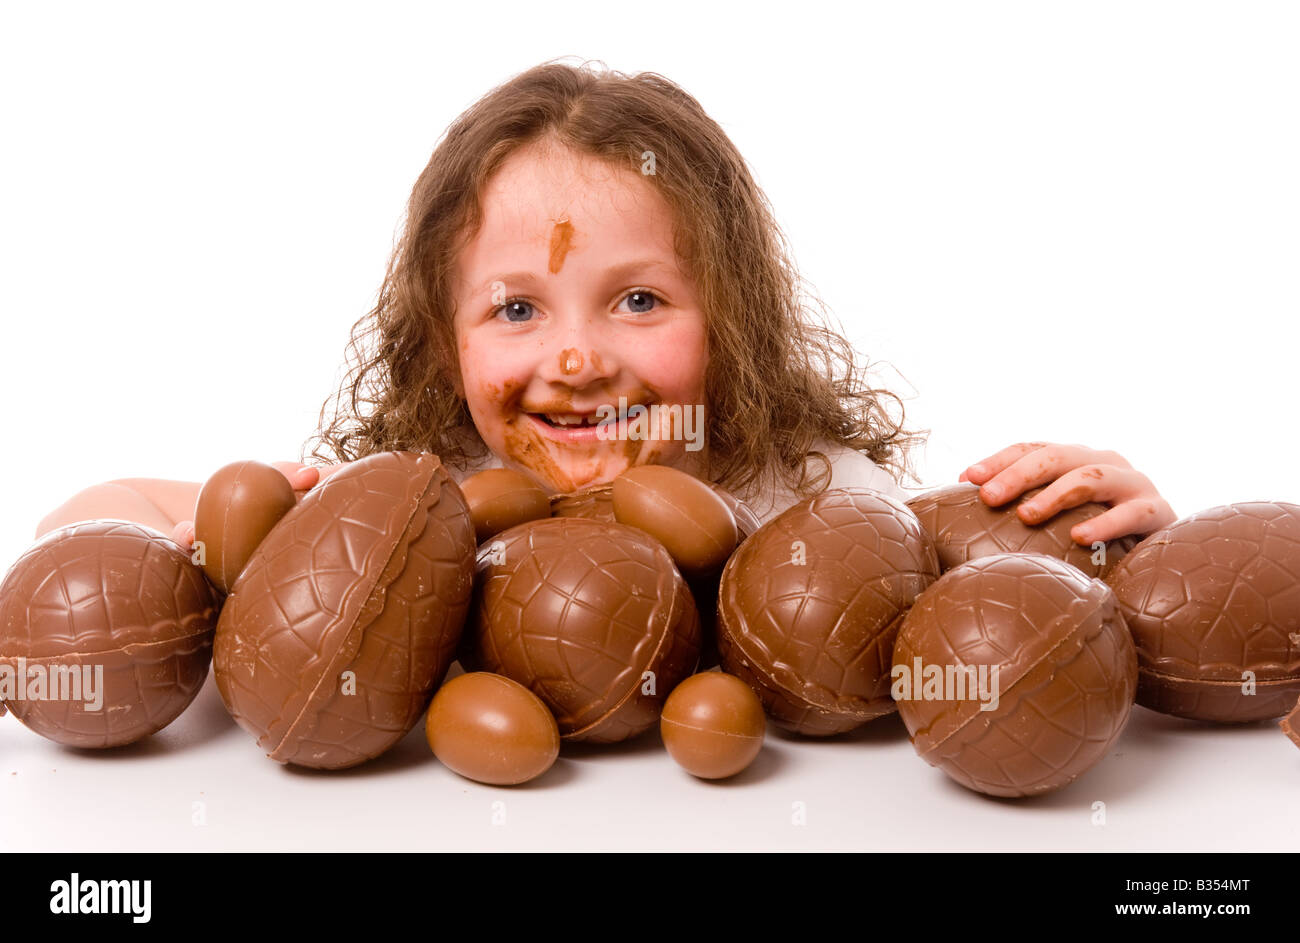 Jeune enfant caucasien avec du chocolat fondu sur le visage et les mains, émergeant de derrière une grande pile d'oeufs de Pâques, vu sur fond blanc. Banque D'Images